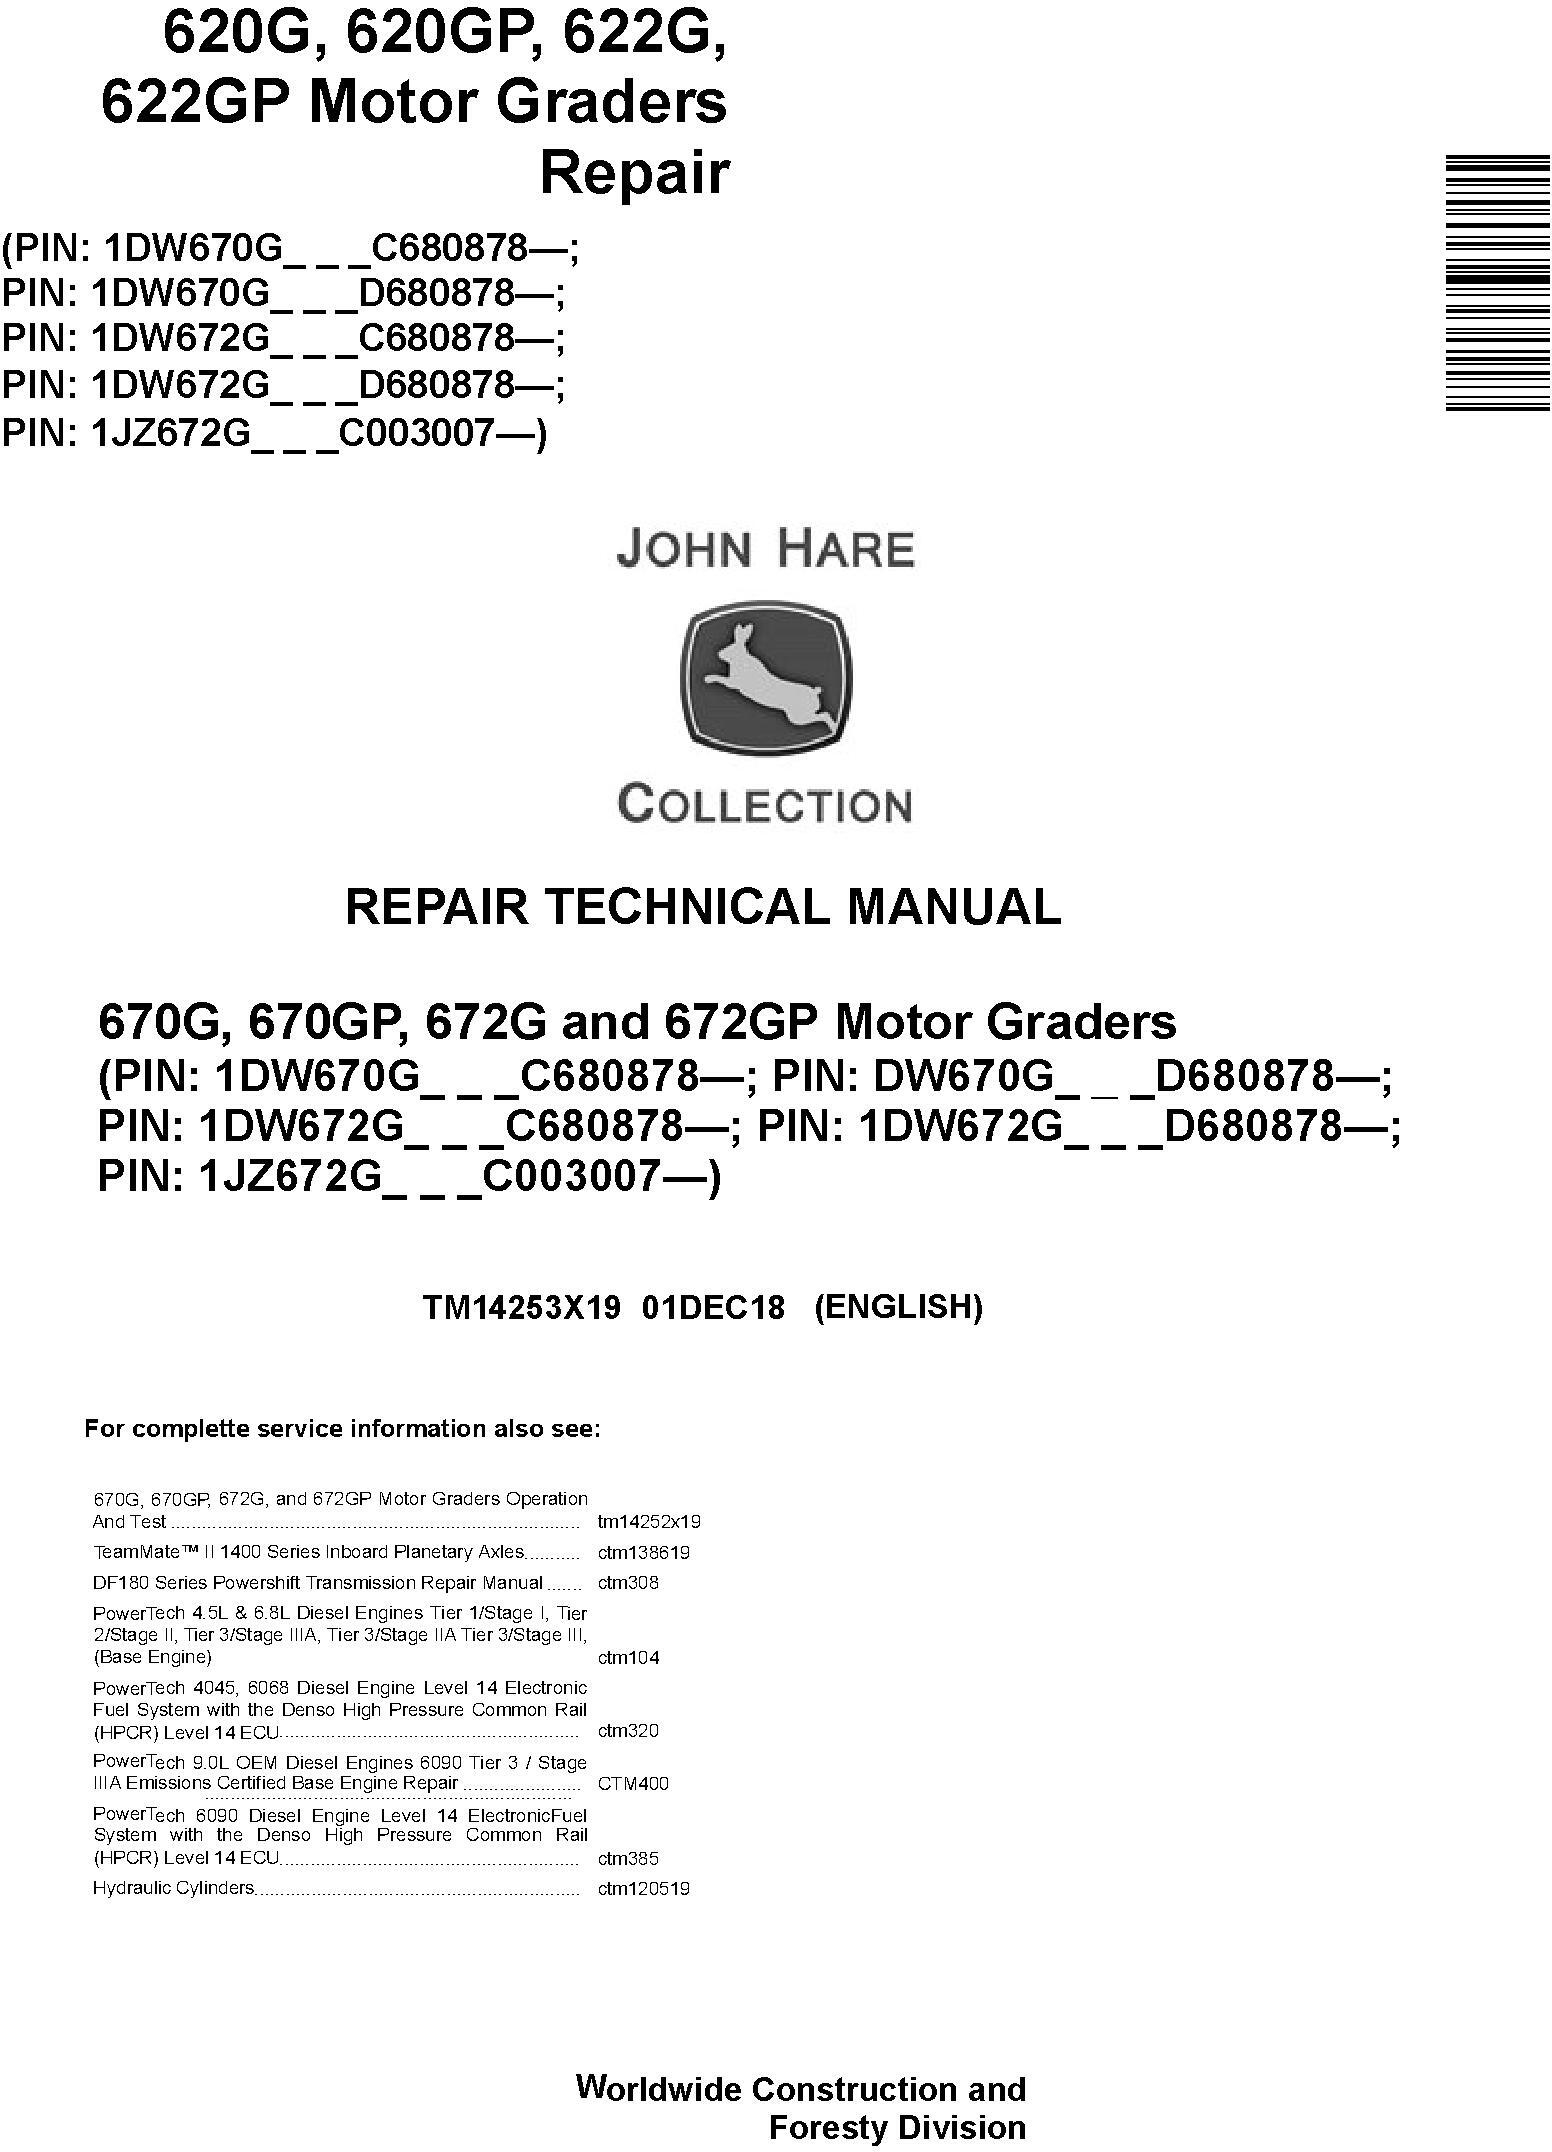 John Deere 670G, 670GP, 672G, 672GP (SN. C680878-,D680878-) Motor Graders Repair Manual (TM14253X19) - 19010